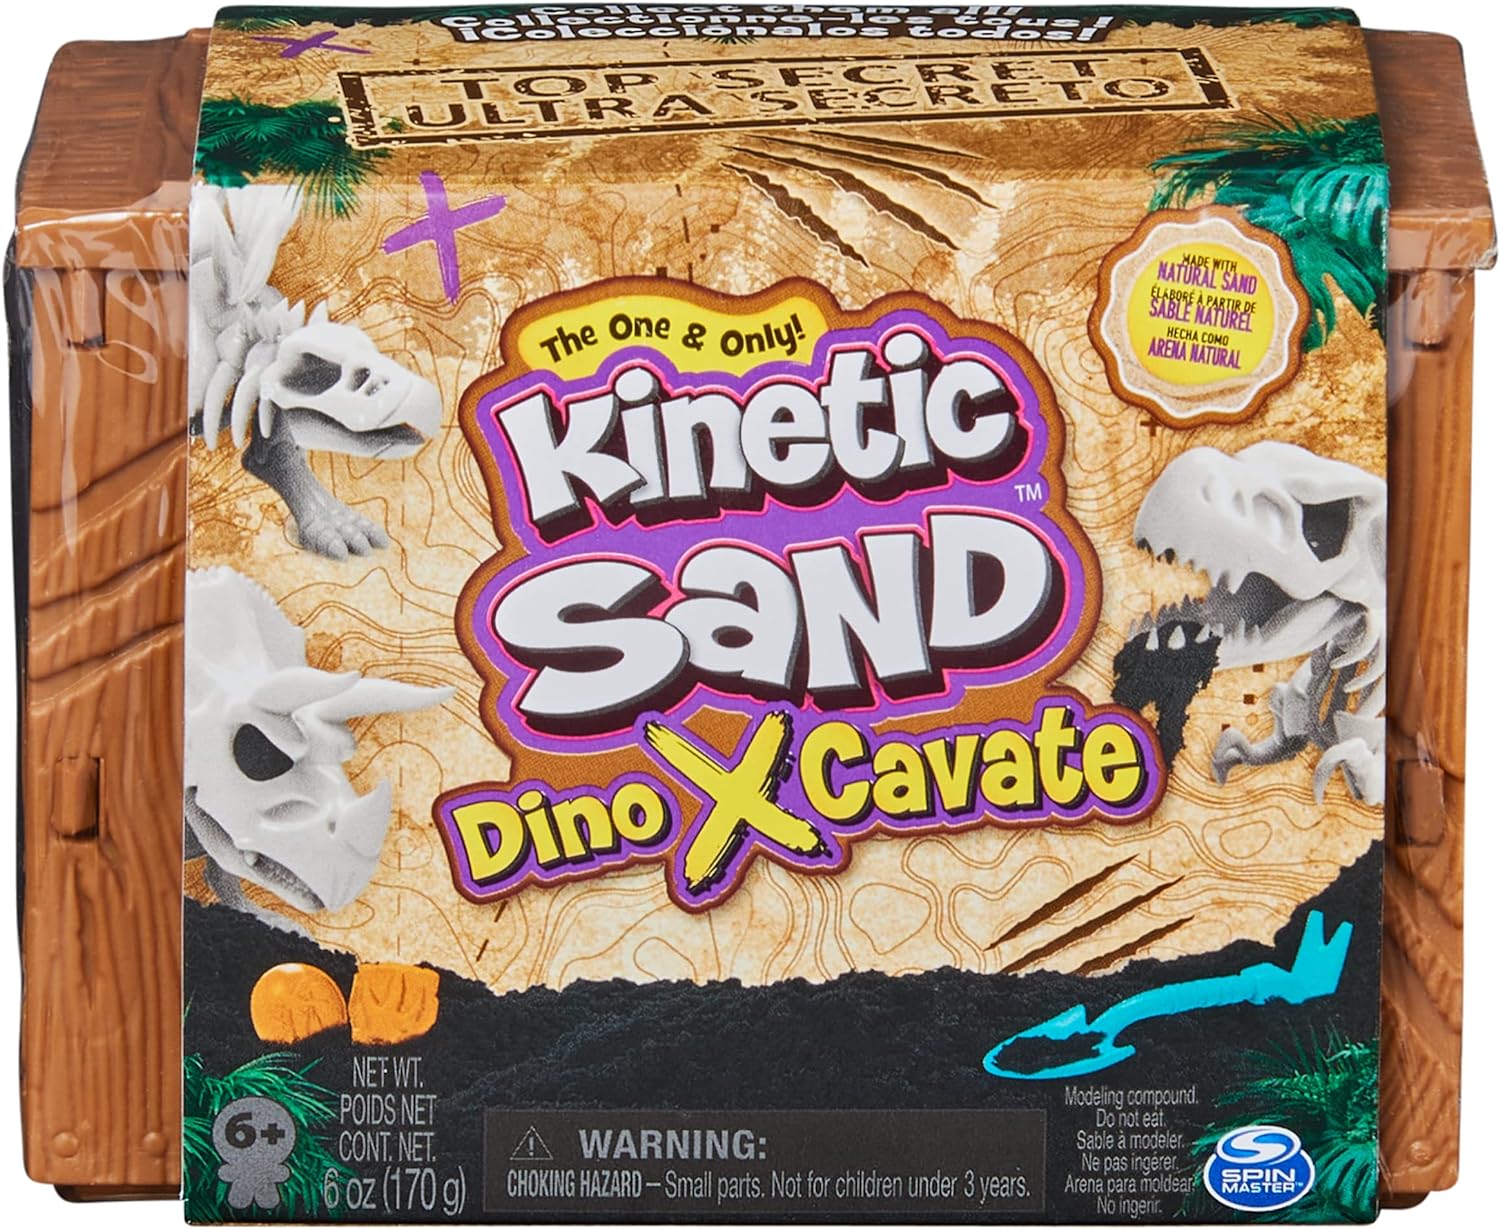 KINETIC SAND DINO XCAVATE